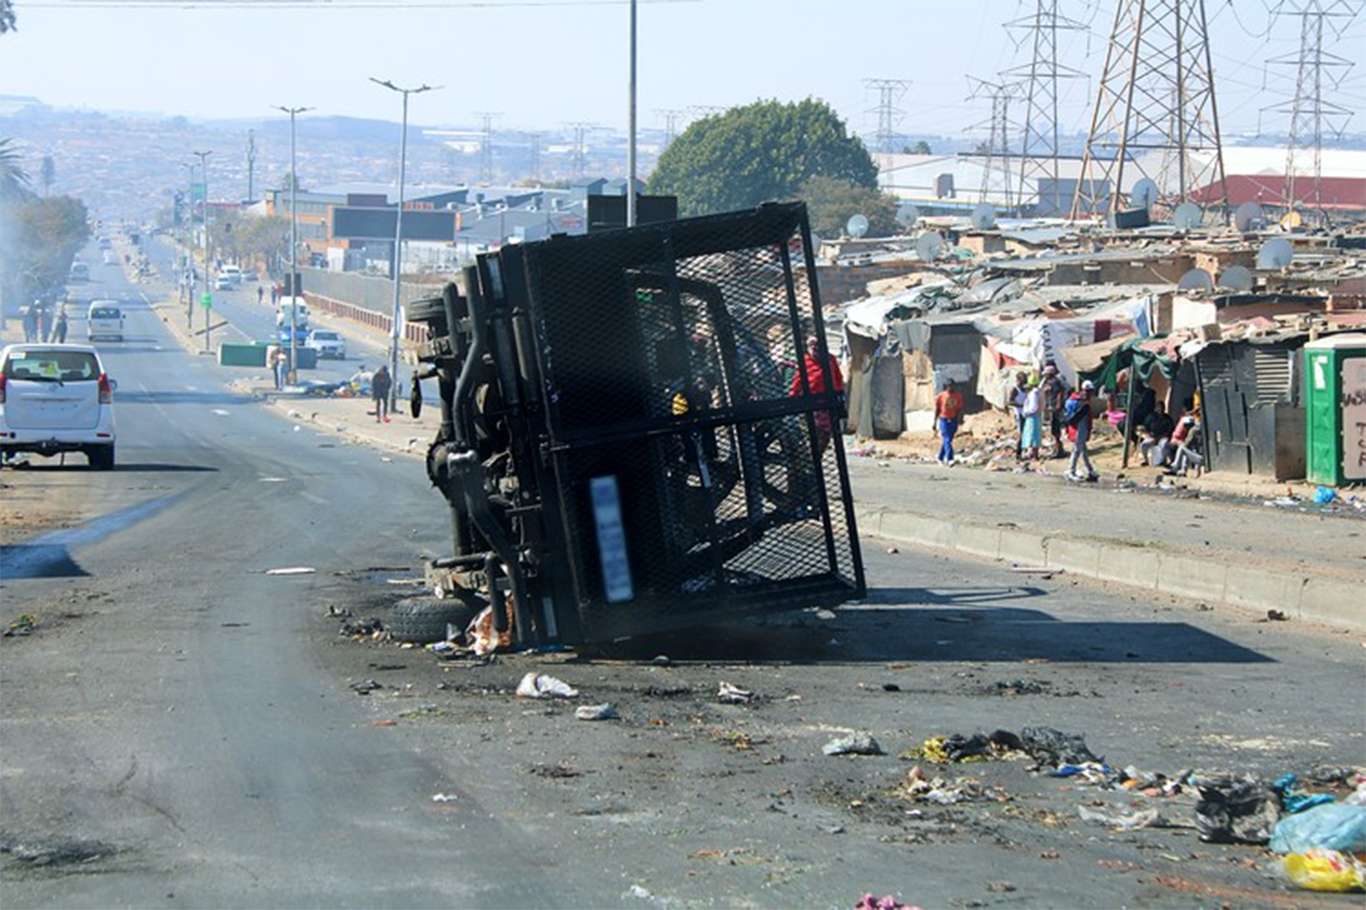 Güney Afrika’daki protestolarda ölü sayısı 117’ye yükseldi